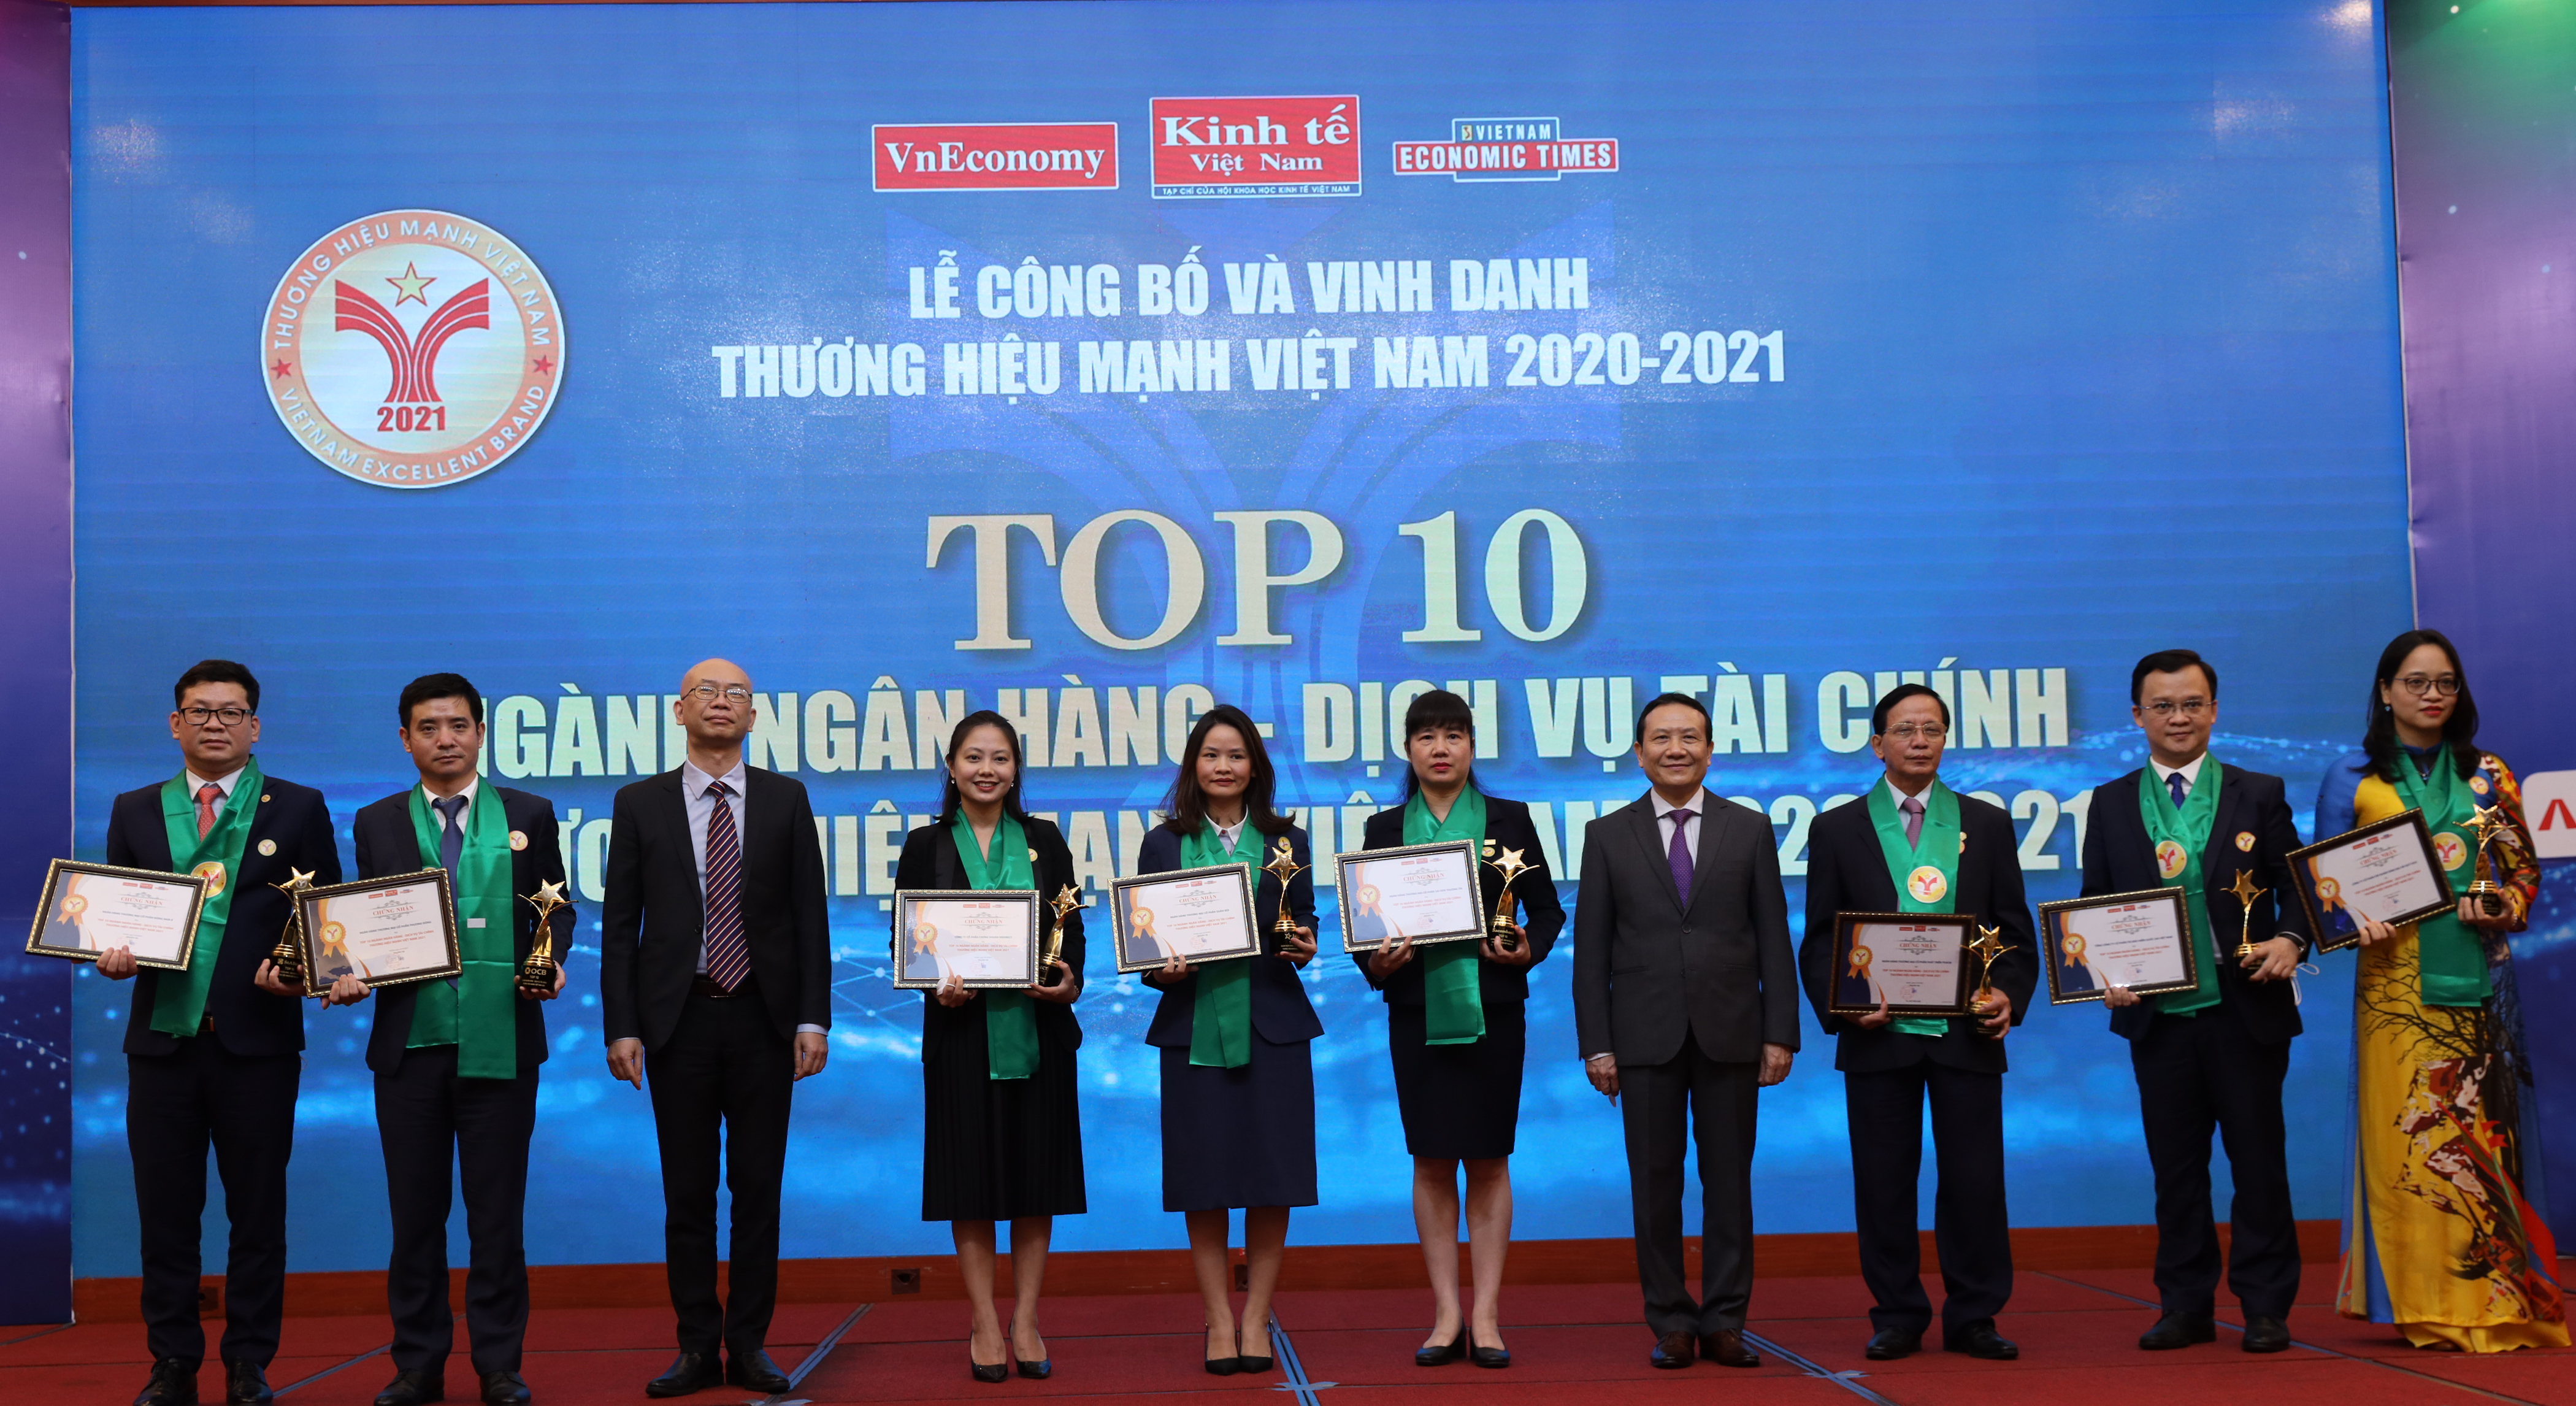 TOP 10 ngành Ngân hàng và dịch vụ tài chính: Ngân hàng Thương mại Cổ phần Quân đội (MB Bank), Ngân hàng Thương mại cổ phần Sài Gòn Thương Tín (SACOMBANK), Công ty Cổ phần Chứng khoán VNDirect, Ngân hàng Thương mại cổ phần Phát triển TP.HCM (HD Bank), Ngân Hàng Thương mại cổ phần Đông Nam Á (SeA Bank), Tổng Công ty cổ phần Tái Bảo hiểm Quốc gia Việt Nam (VINARE), Tập đoàn Vàng Bạc Đá quý Doji (DOJI), Ngân hàng Nông nghiệp và Phát triển Nông thôn Việt Nam (Agribank), và Tổng Công ty Cổ phần Bảo hiểm Bảo Long.